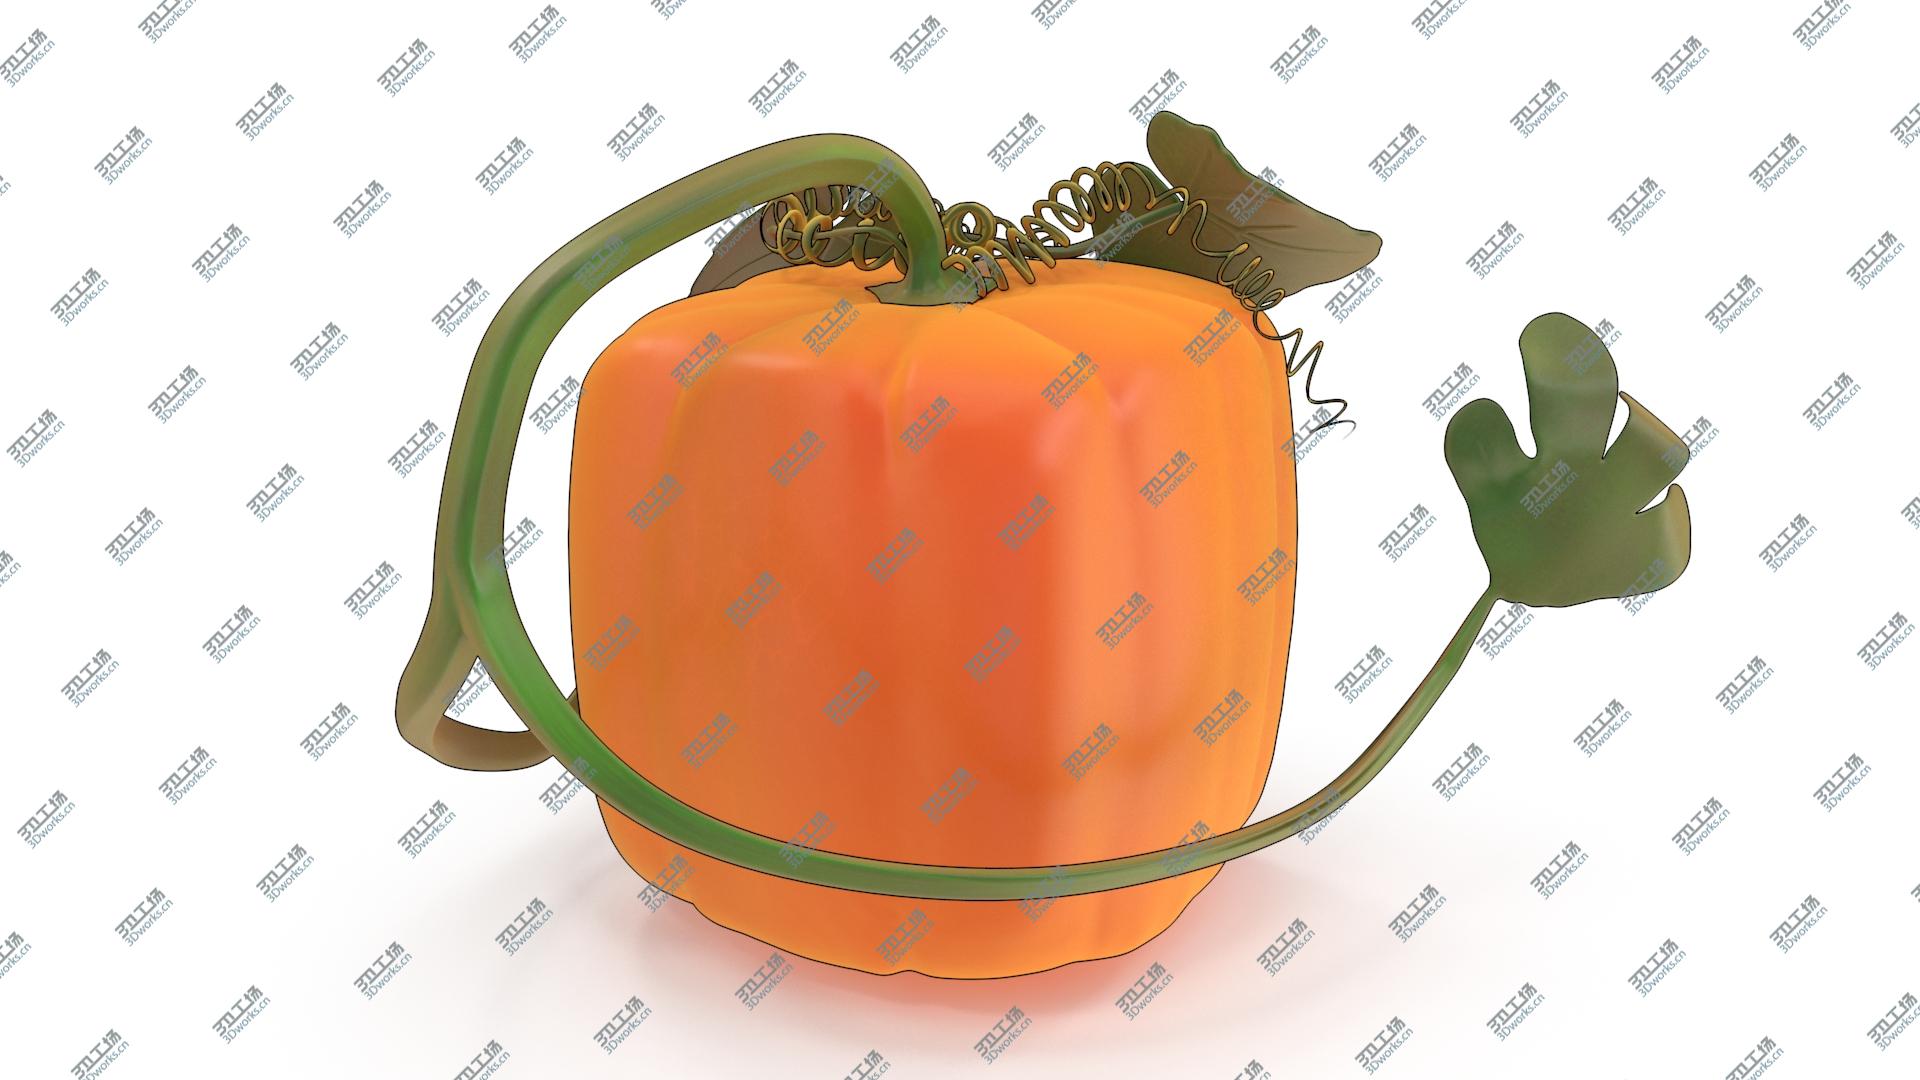 images/goods_img/2021040233/Cartoon Pumpkin 3D model/4.jpg